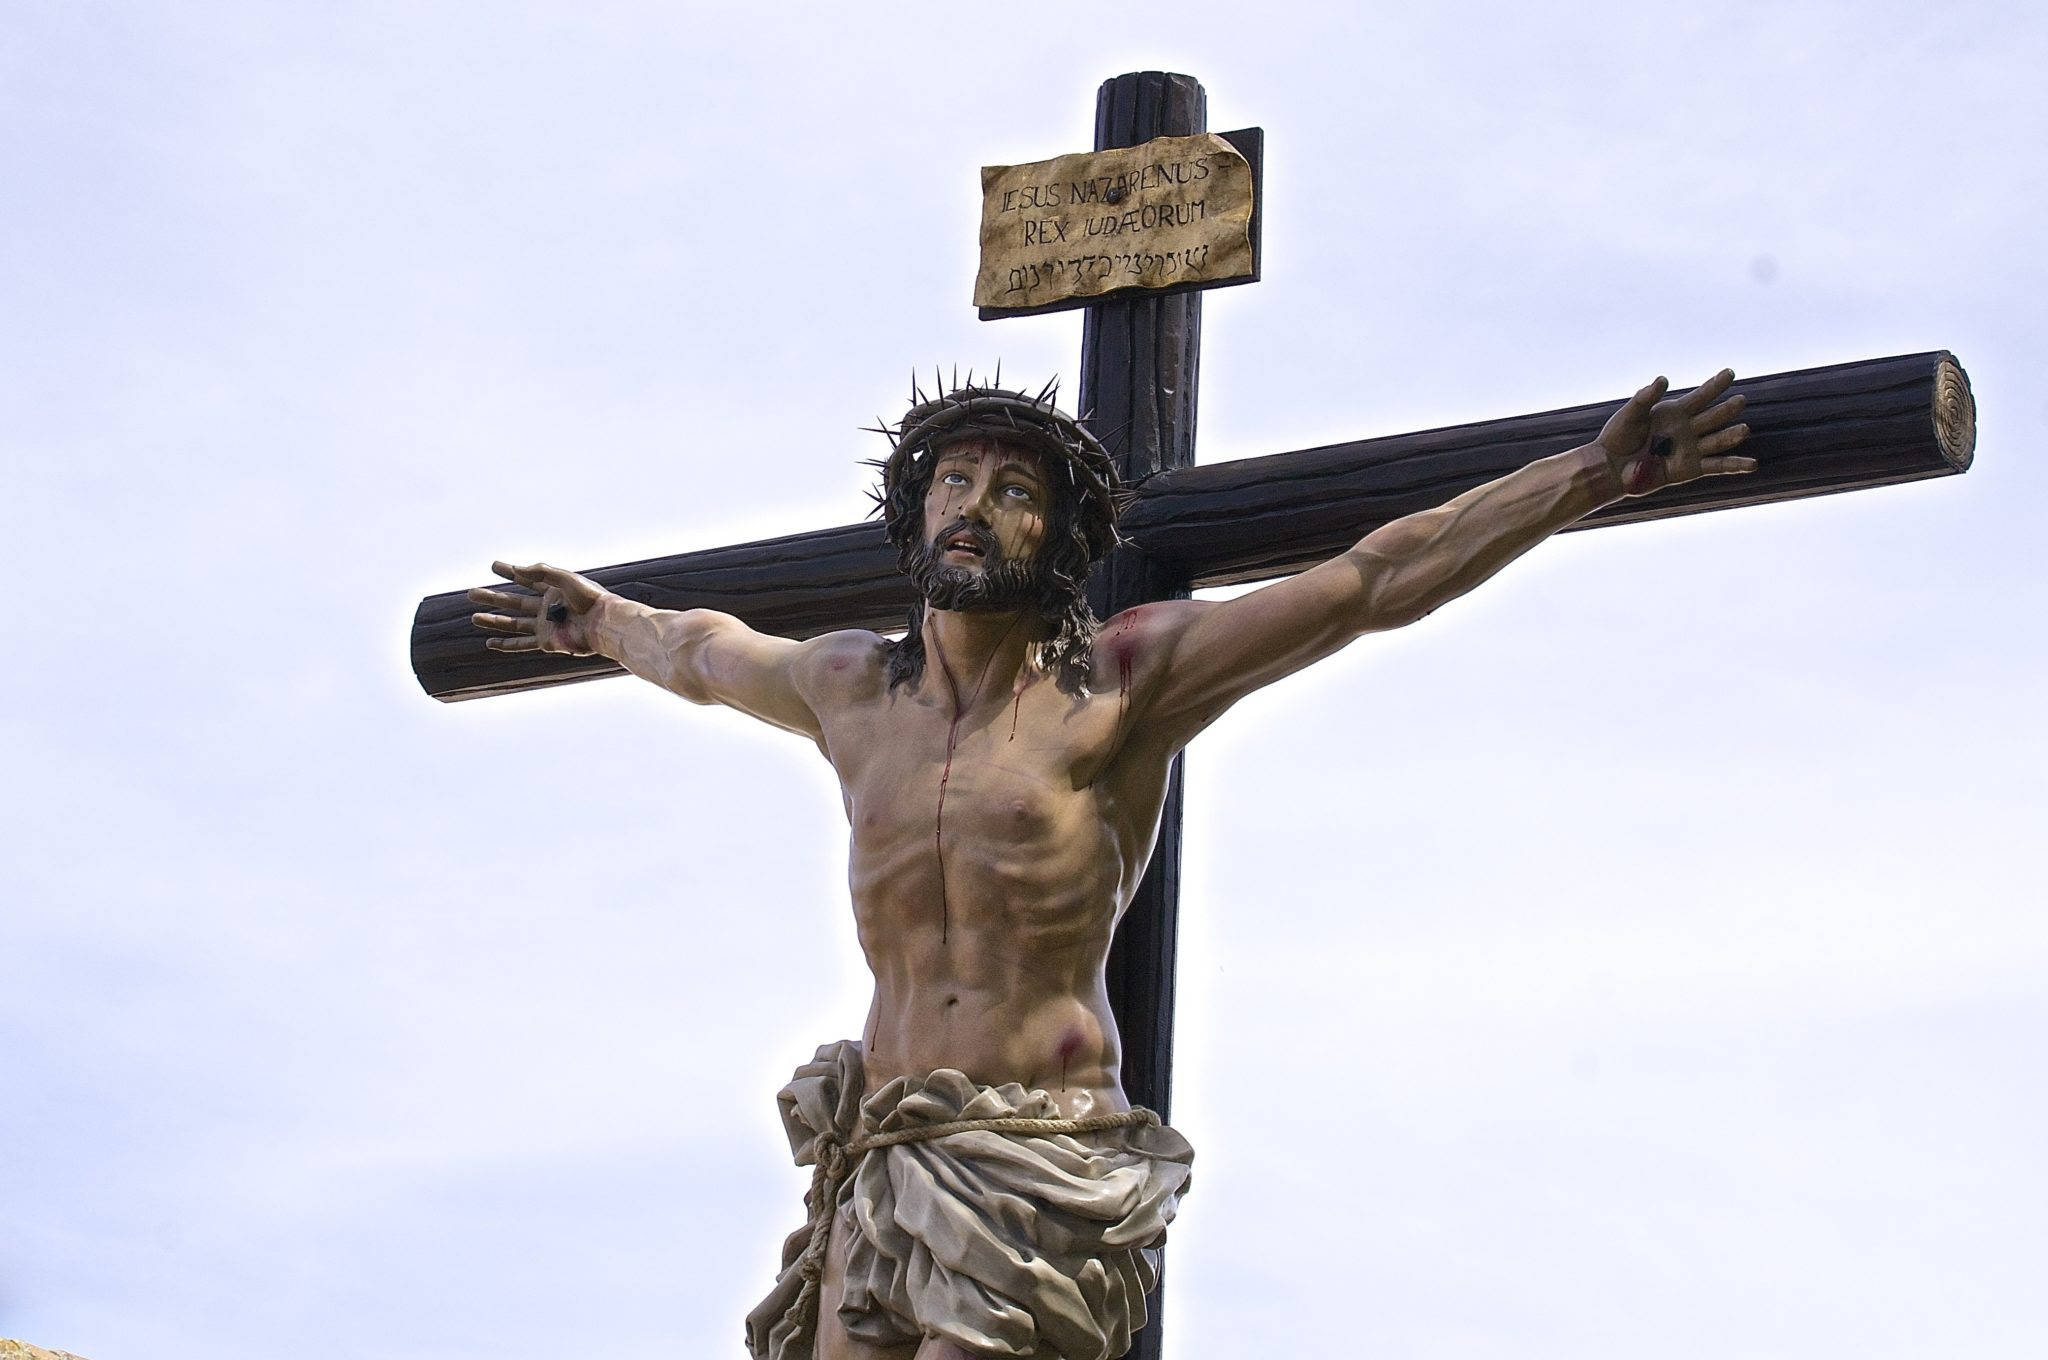 Chrystus wywyższony na Krzyżu ogarnia cały świat